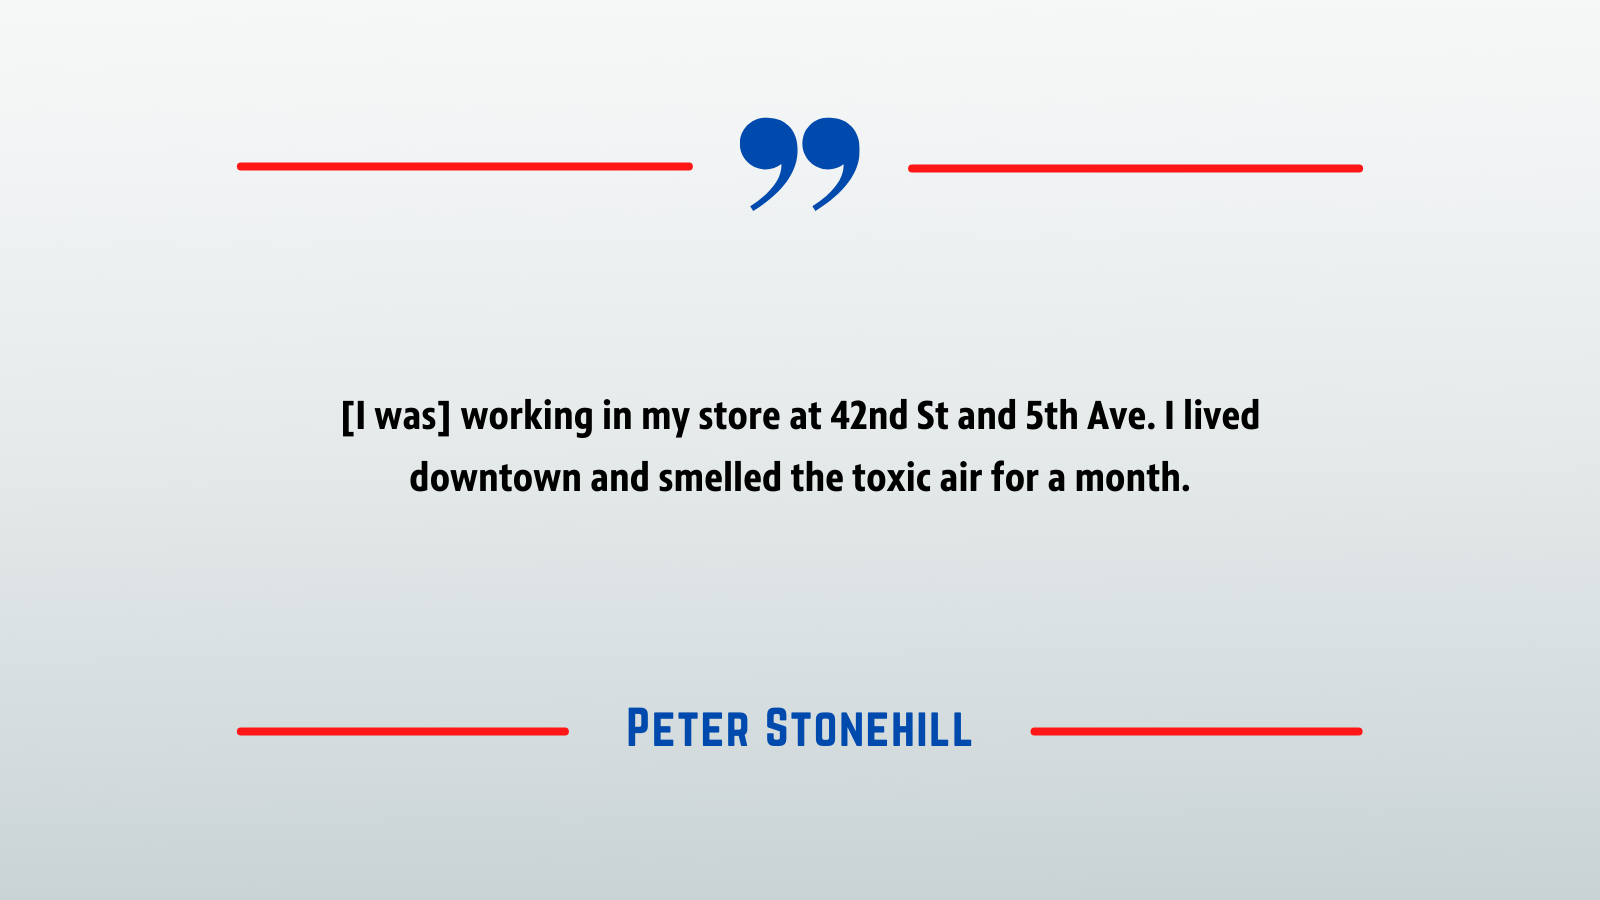 September 11 - Peter Stonehill